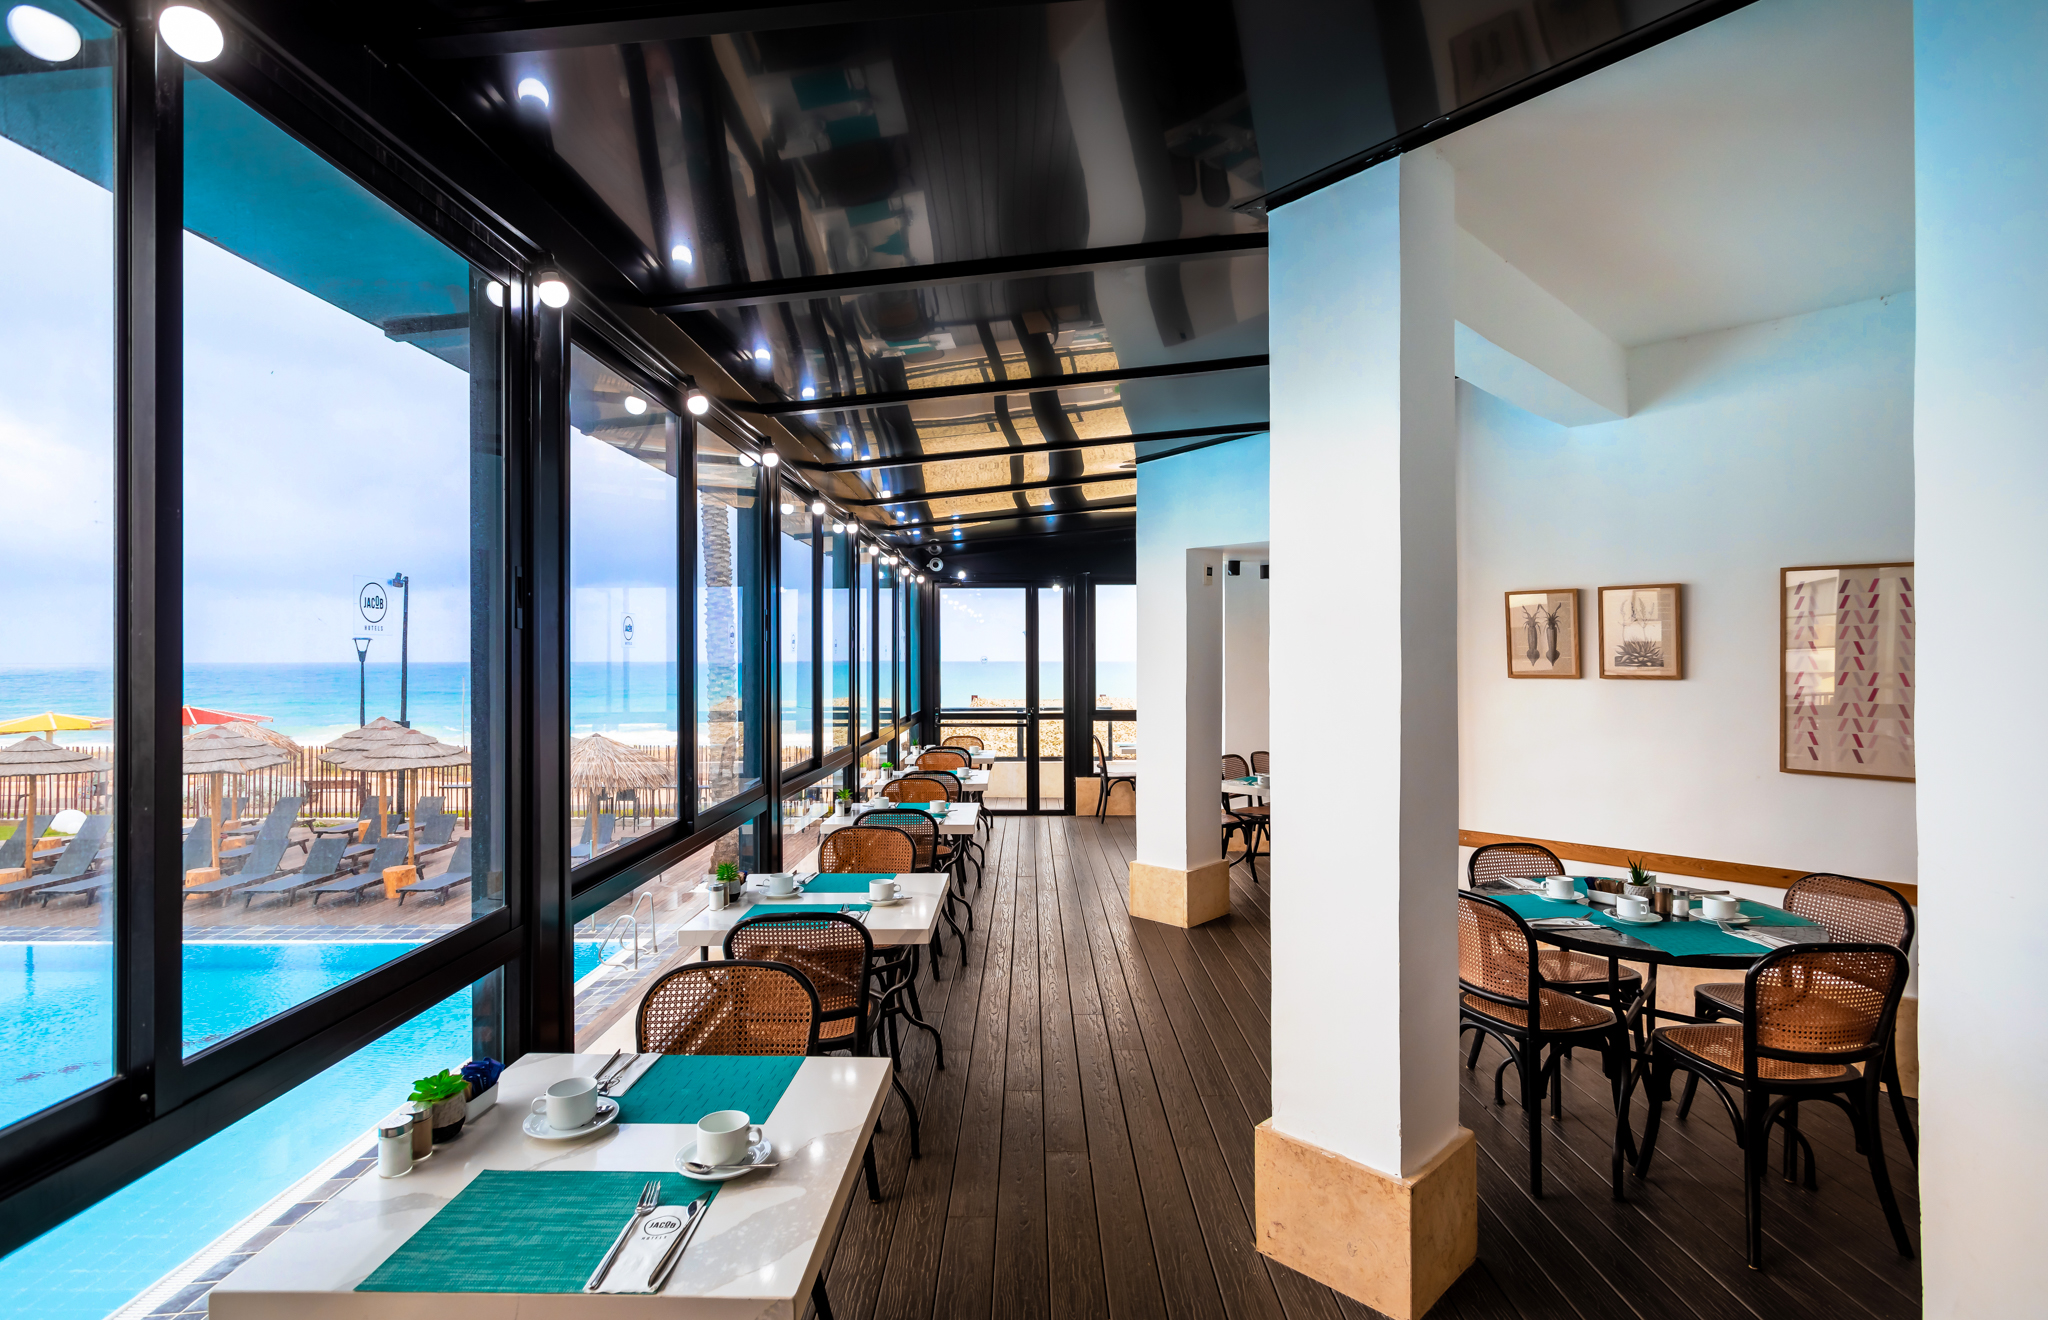 חדר האוכל פונה לים התיכון במלון ג׳ייקוב סי לייף בנהריה